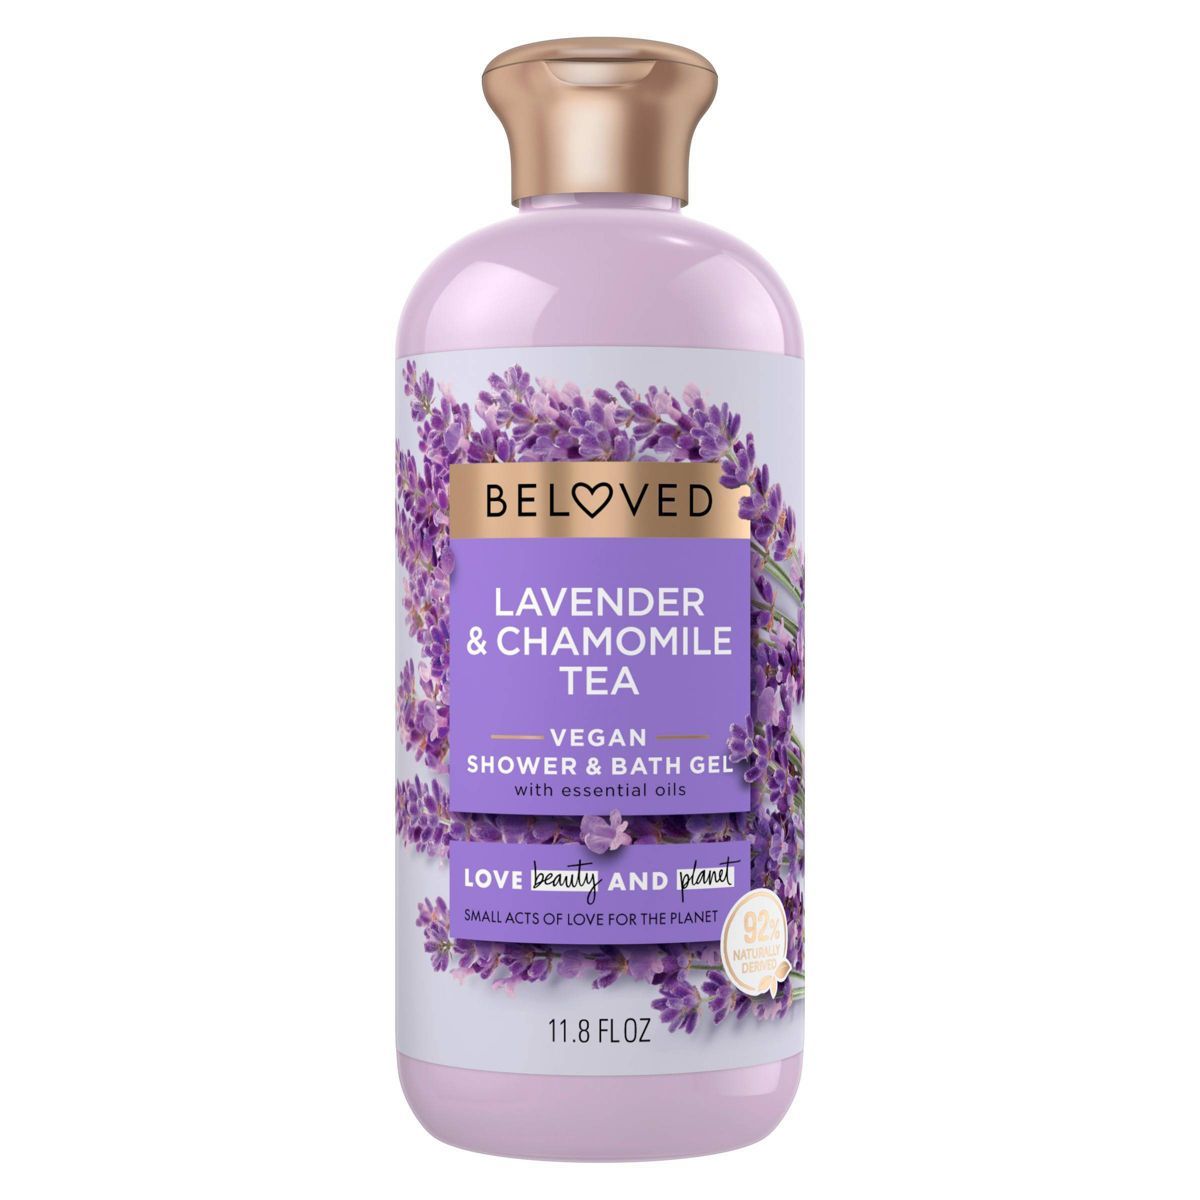 Beloved Lavender and Chamomile Tea Vegan Body Wash - 11.8 fl oz | Target